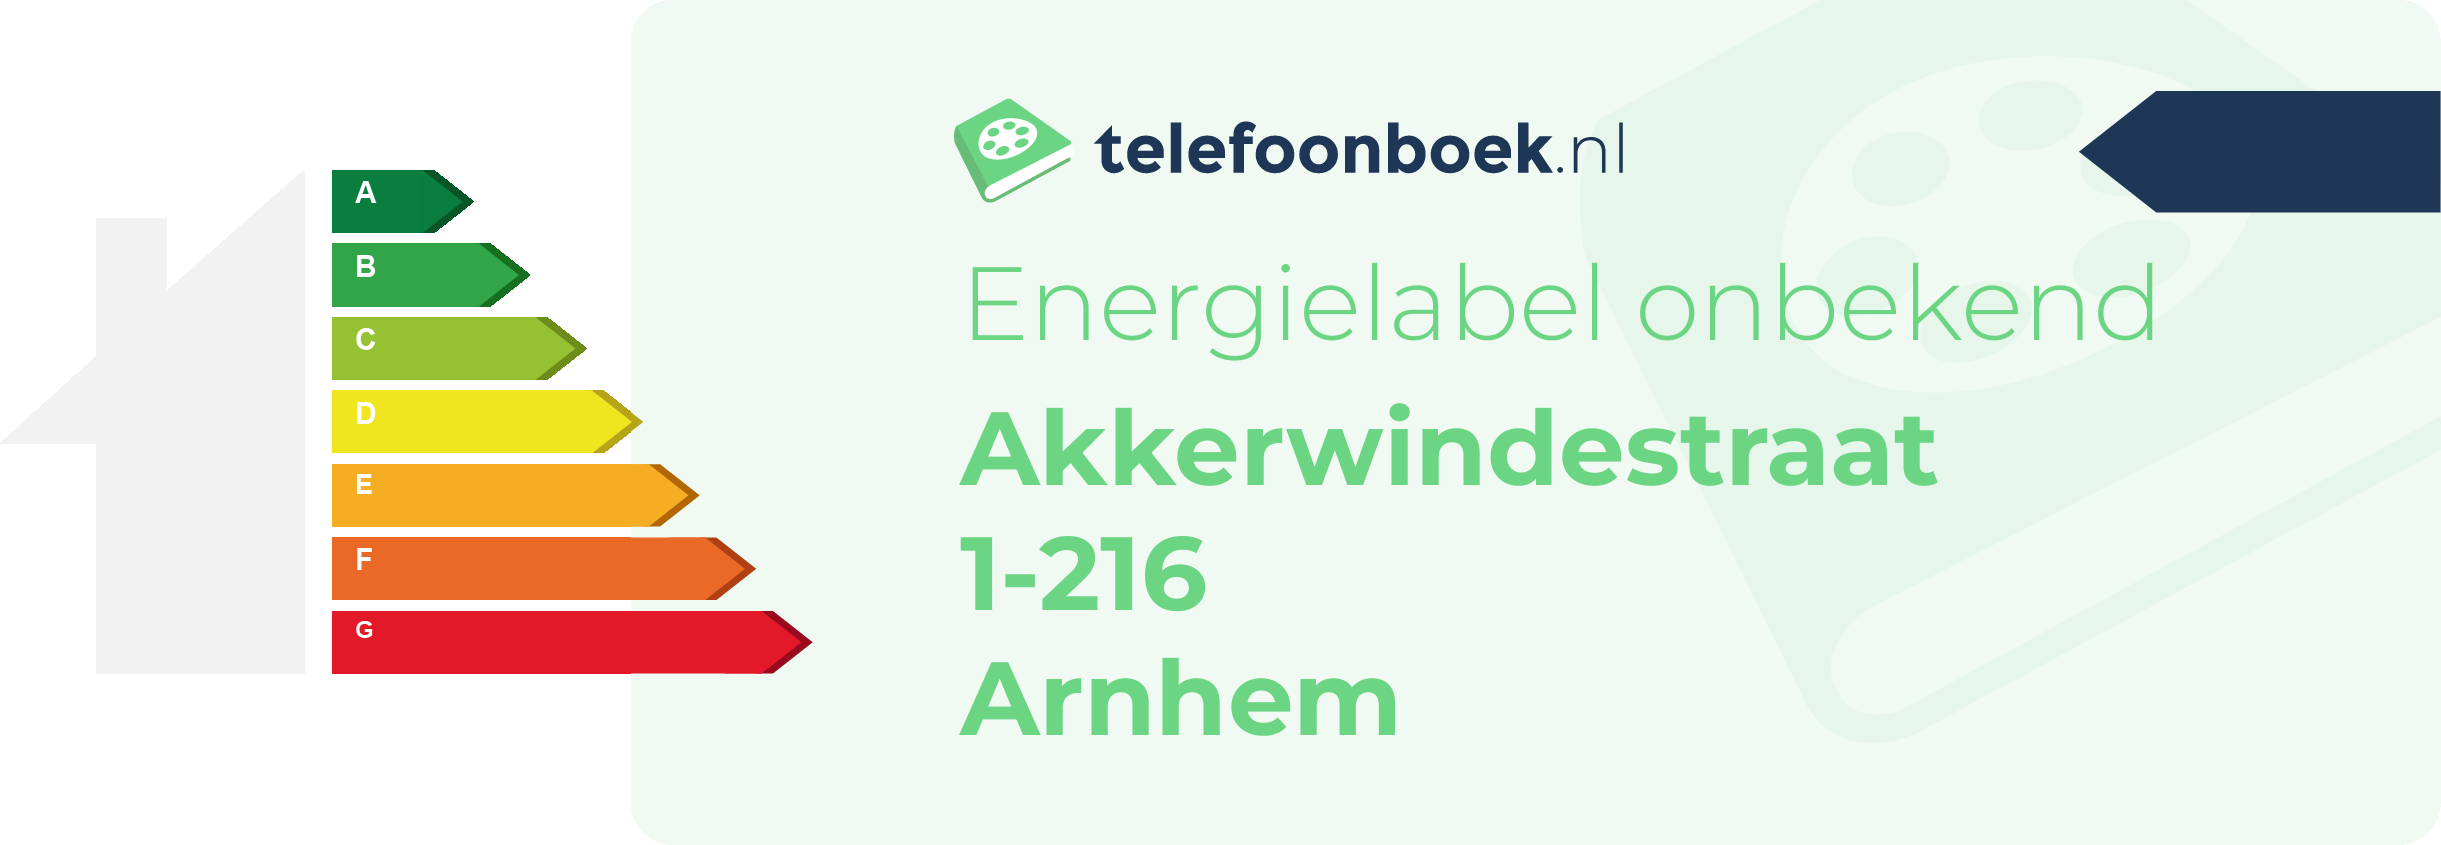 Energielabel Akkerwindestraat 1-216 Arnhem